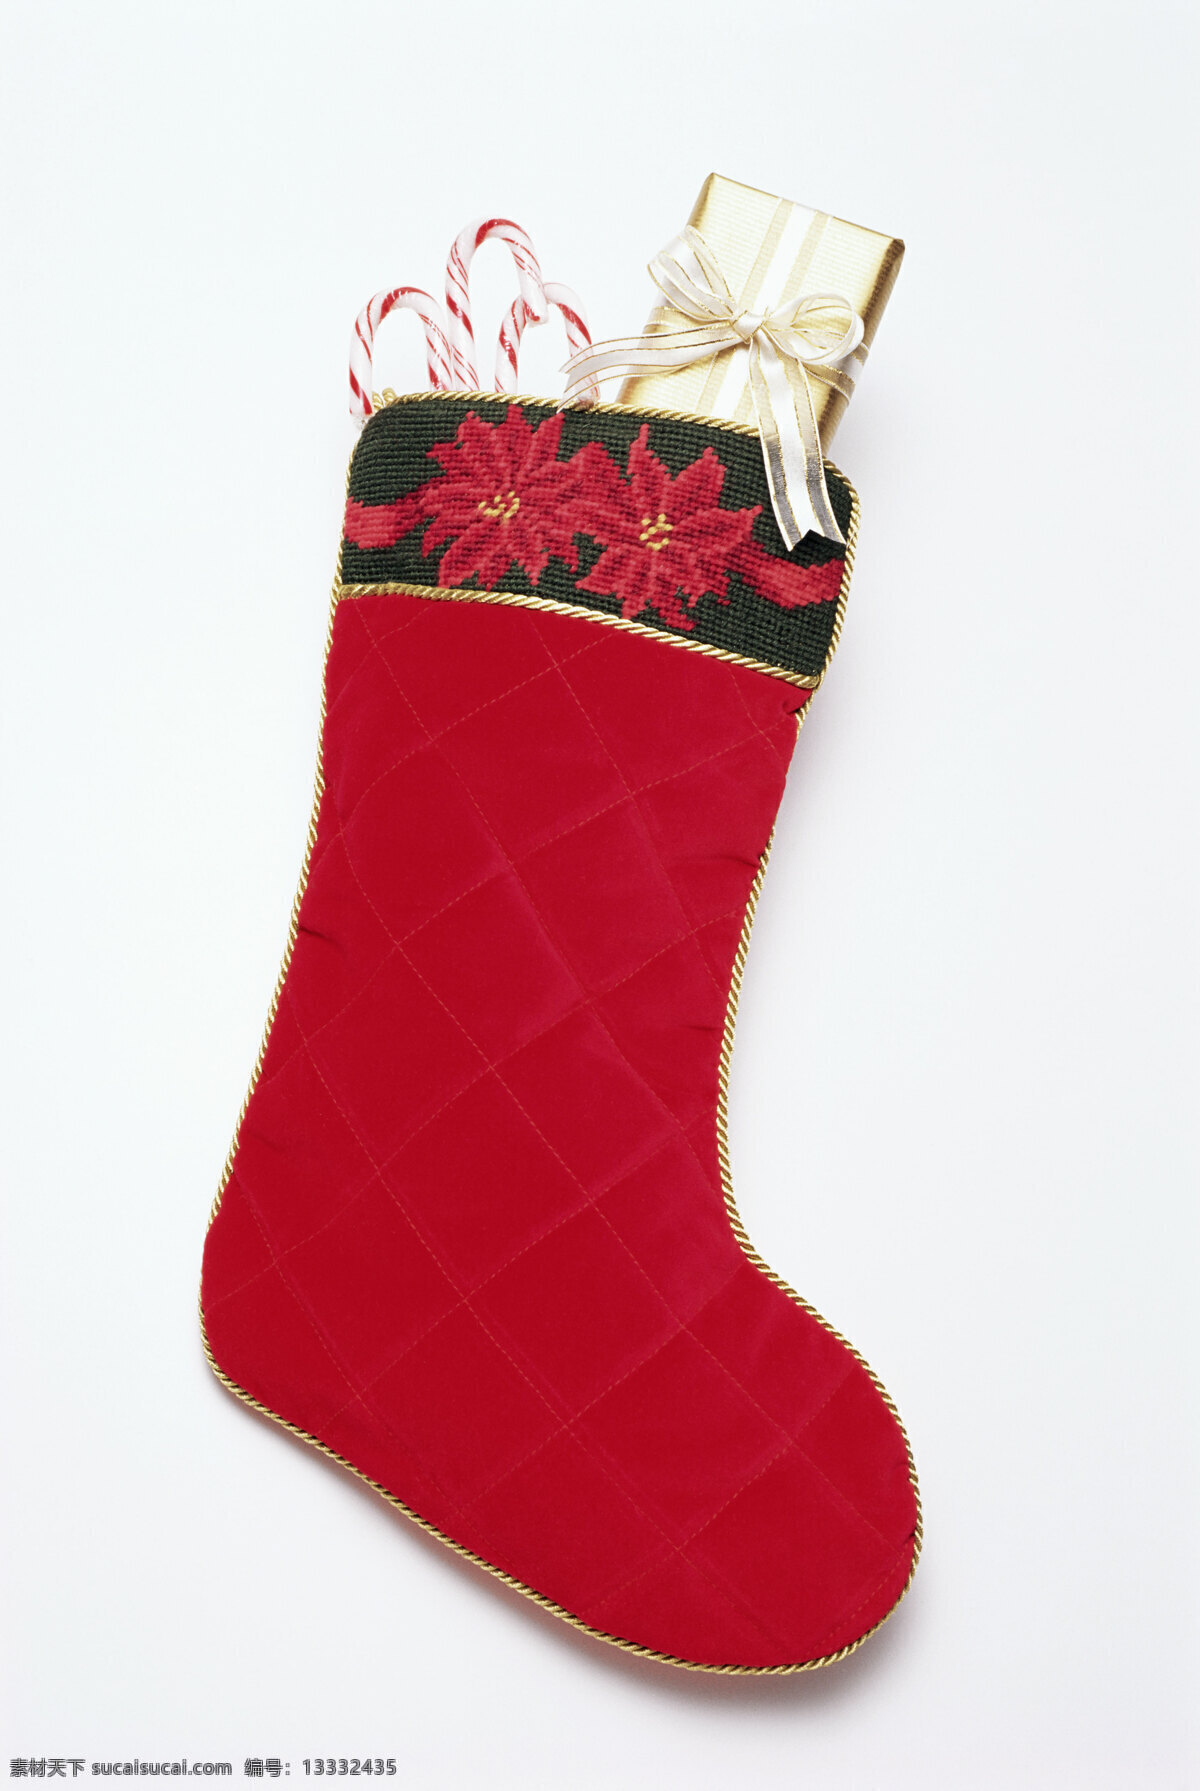 红色 圣诞 袜 袜子 耶诞 节 圣诞节 节日素材